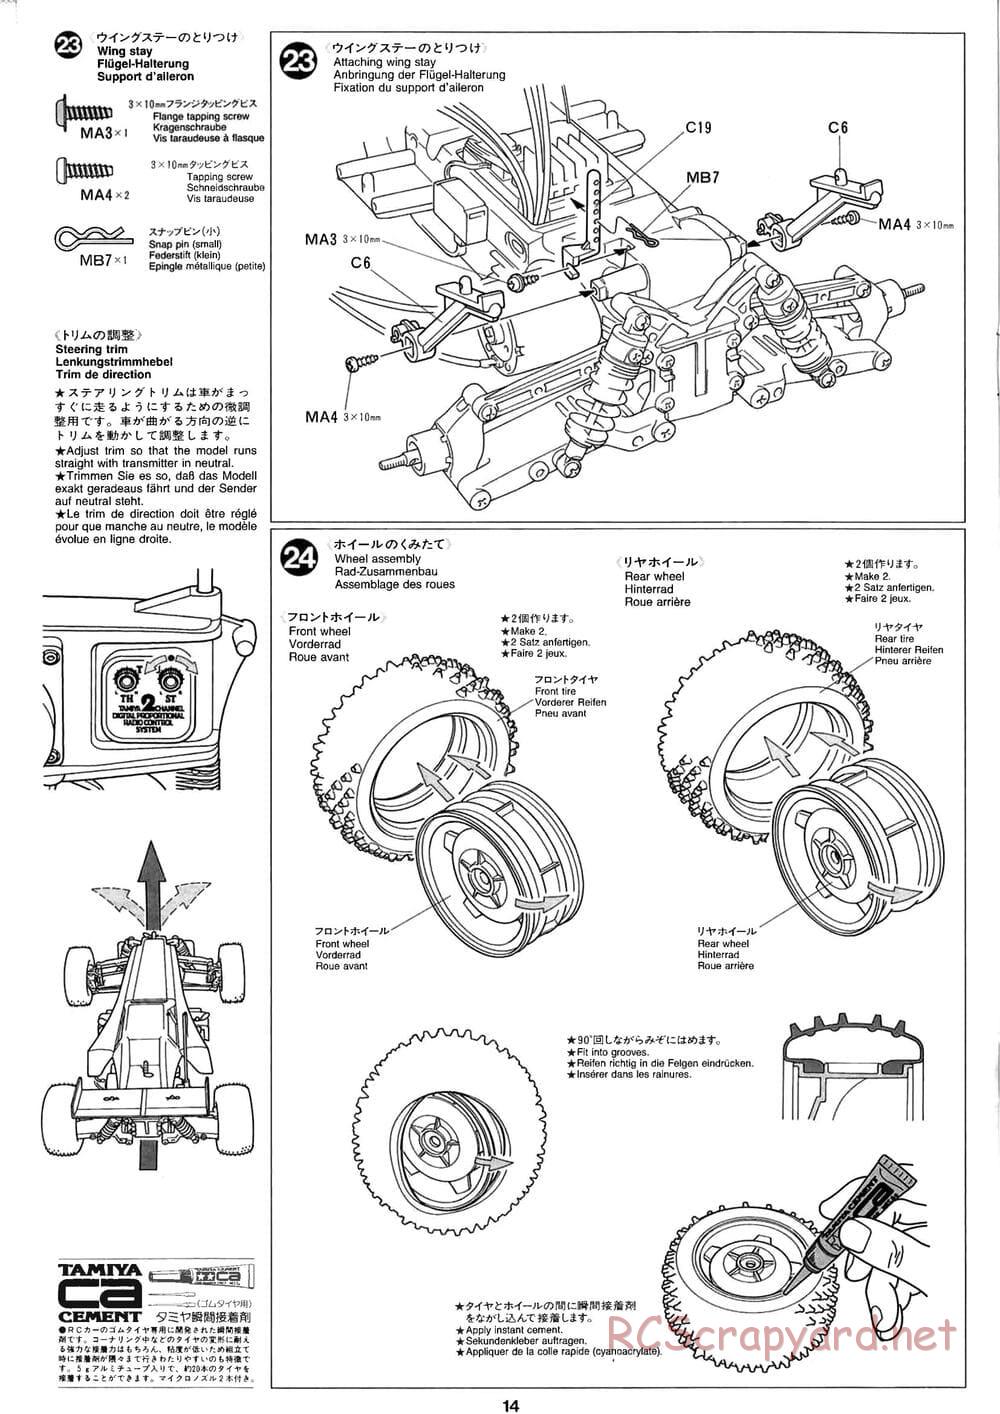 Tamiya - Baja Champ - TL-01B Chassis - Manual - Page 14